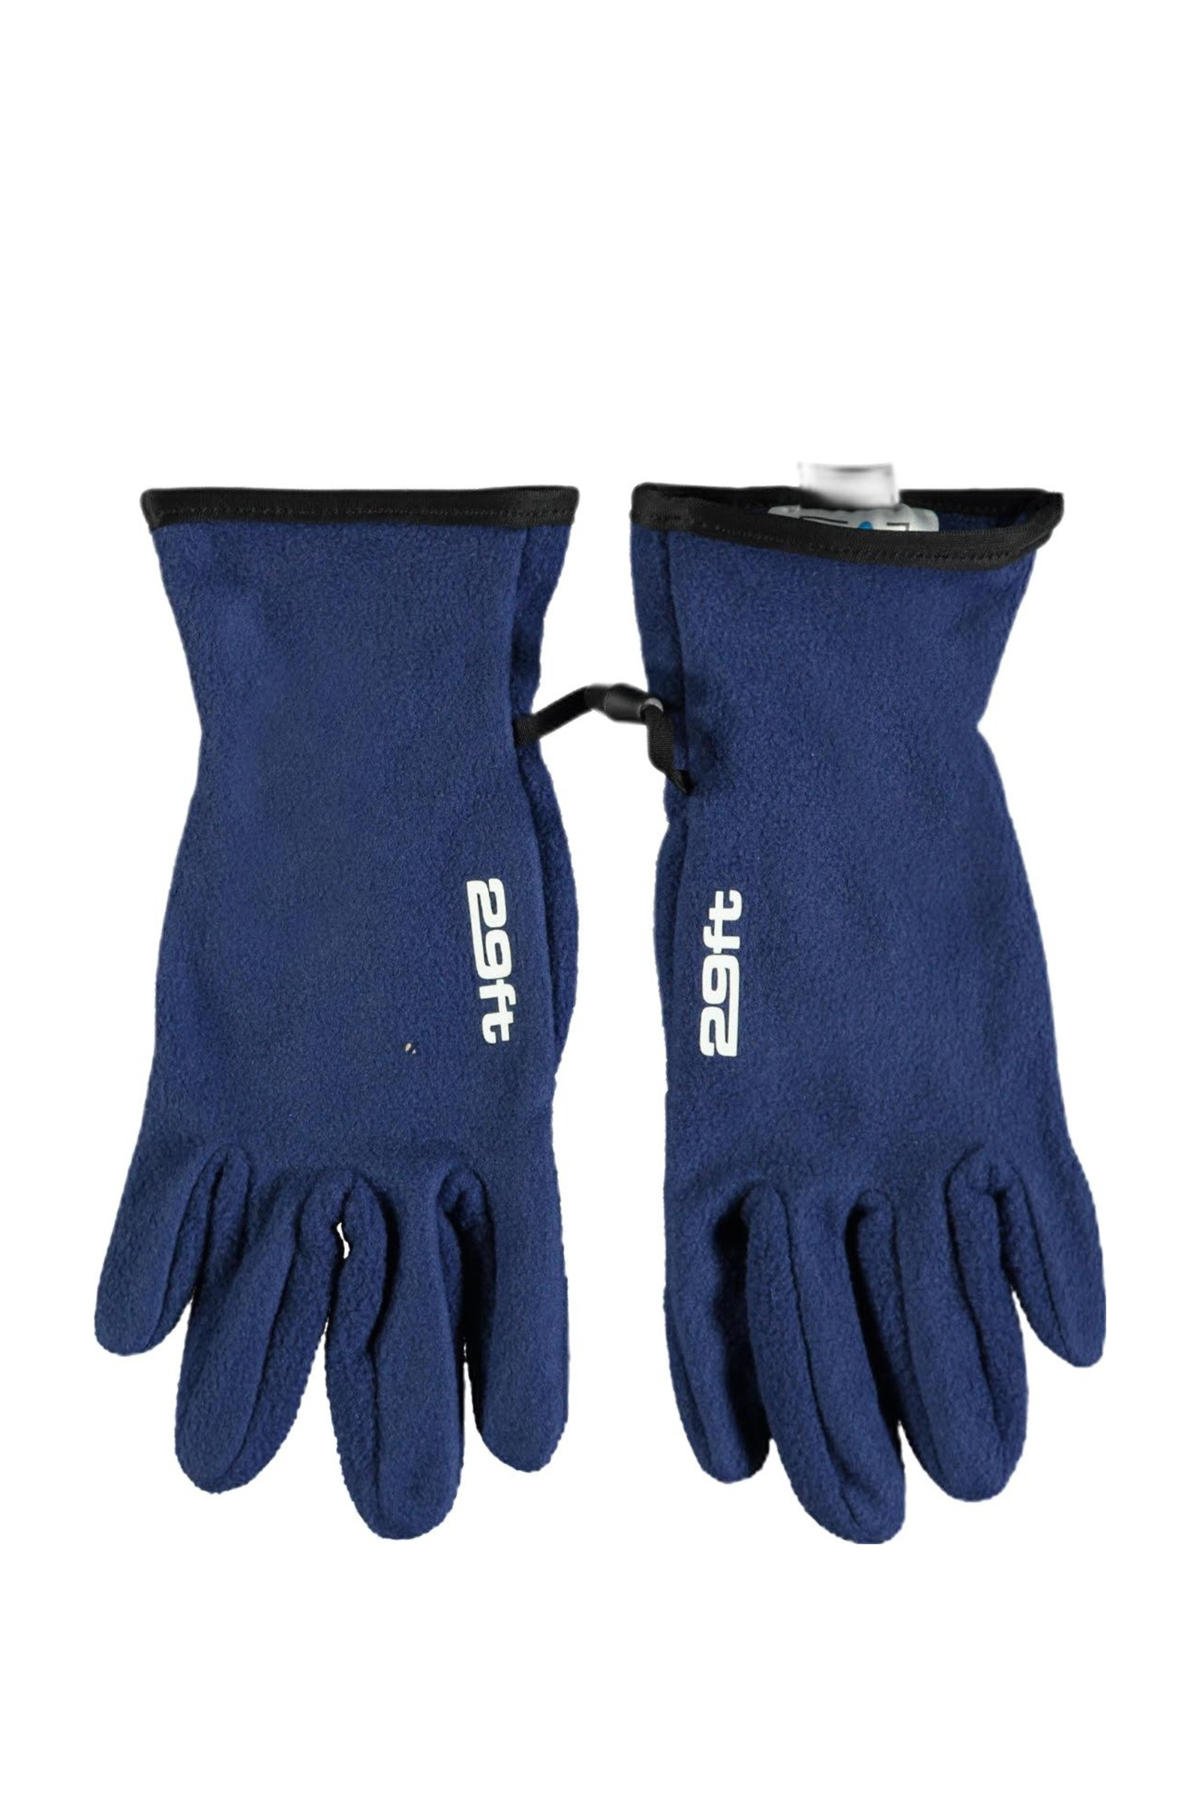 Onderscheiden afschaffen onszelf 29FT fleece handschoenen donkerblauw | wehkamp